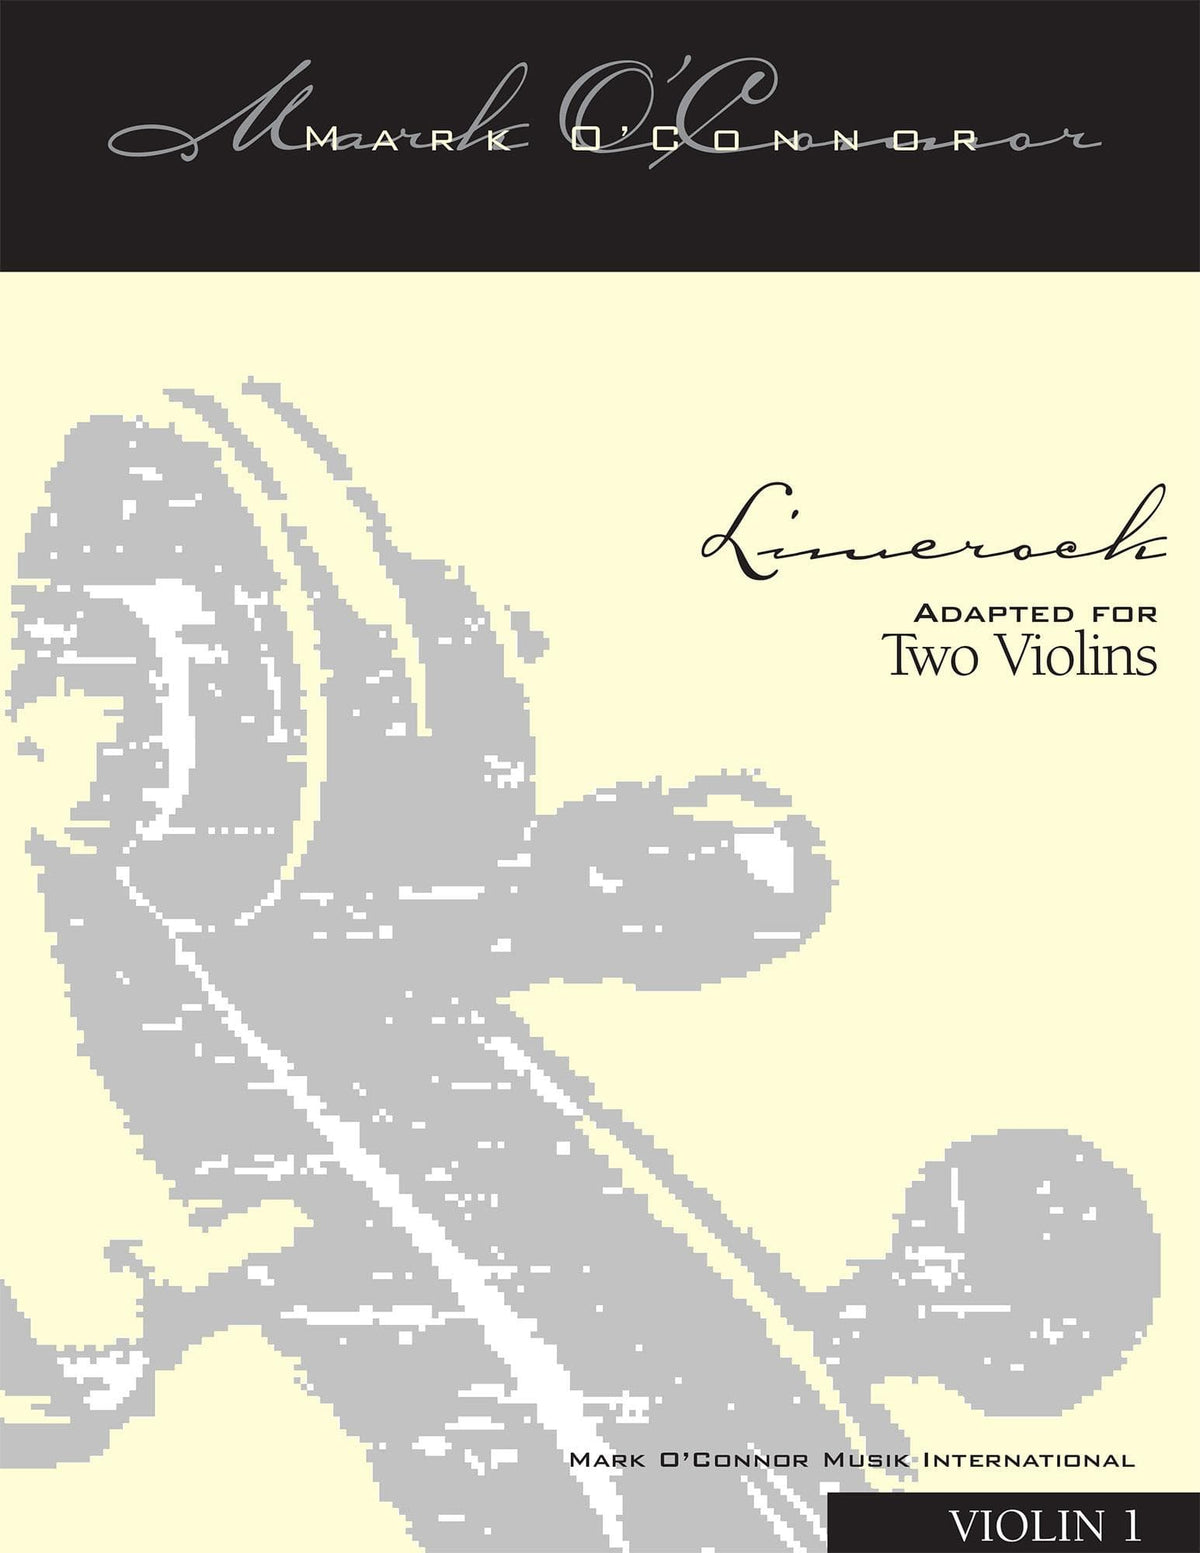 O'Connor, Mark - Limerock for 2 Violins - Violin 1 - Digital Download